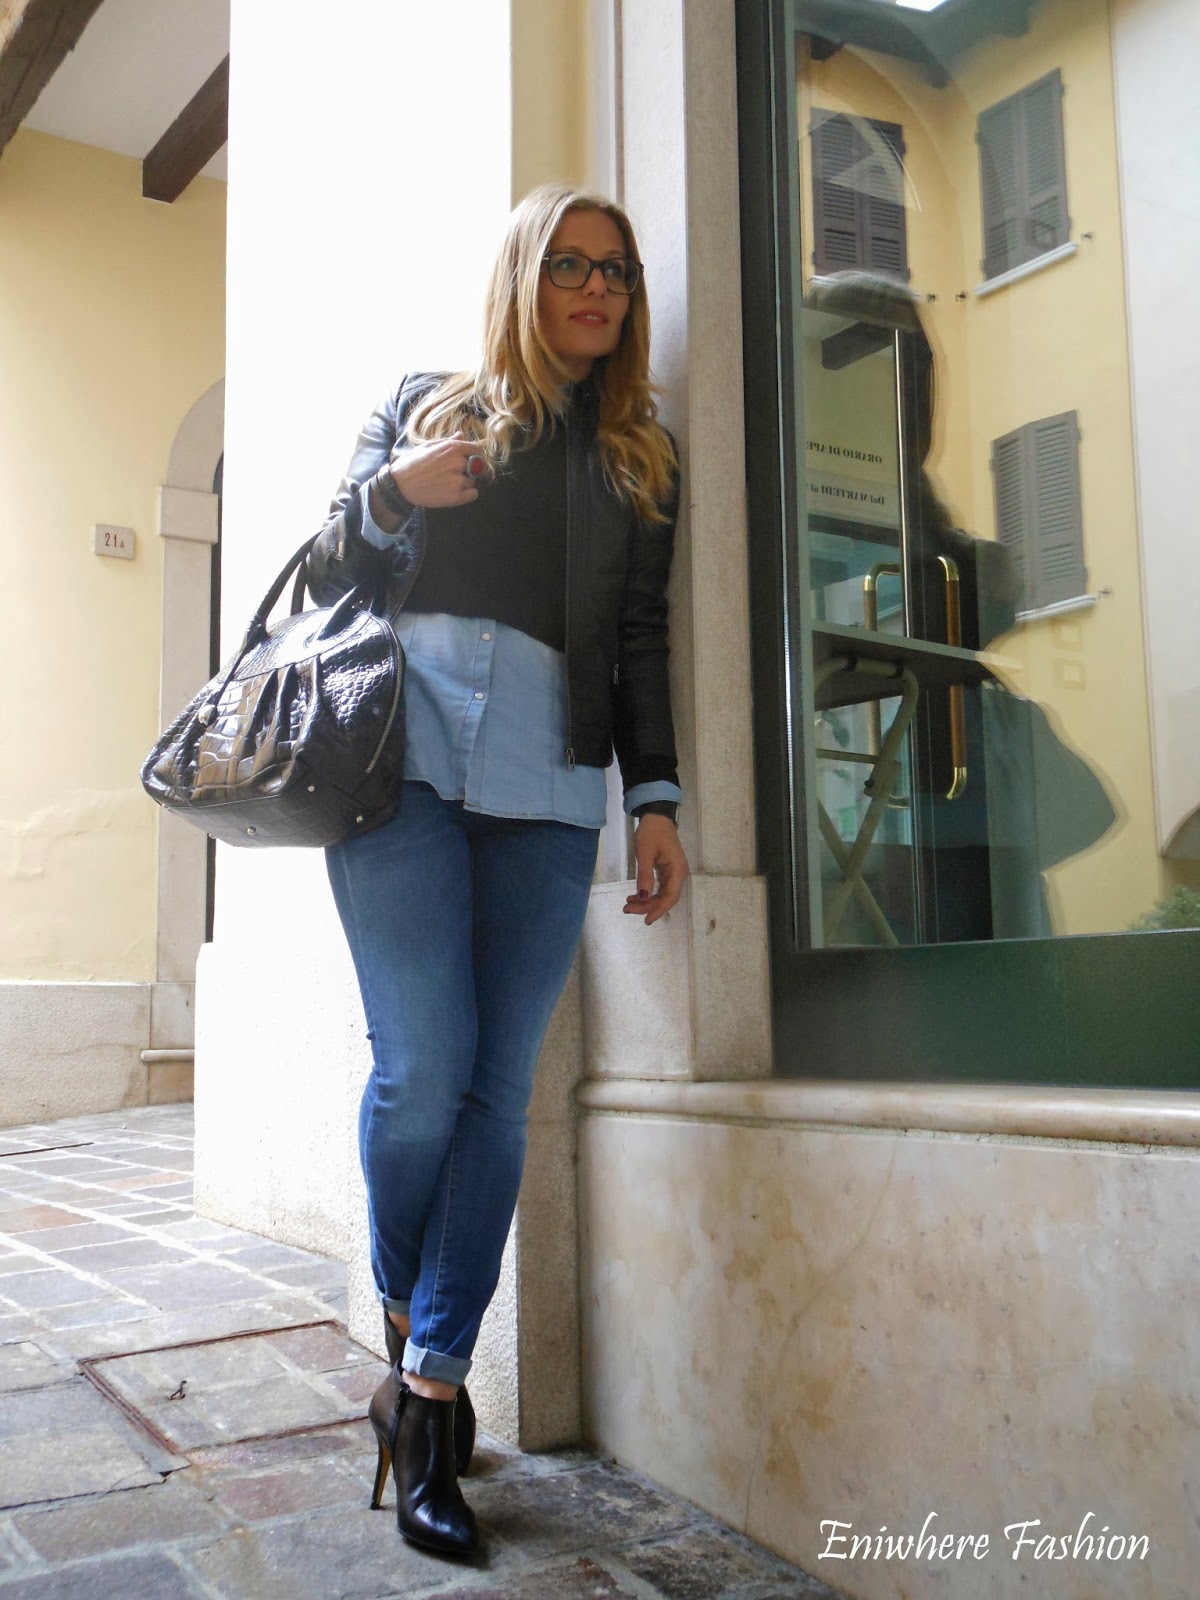 Eniwhere Fashion - Jeans Gas a Desenzano del Garda